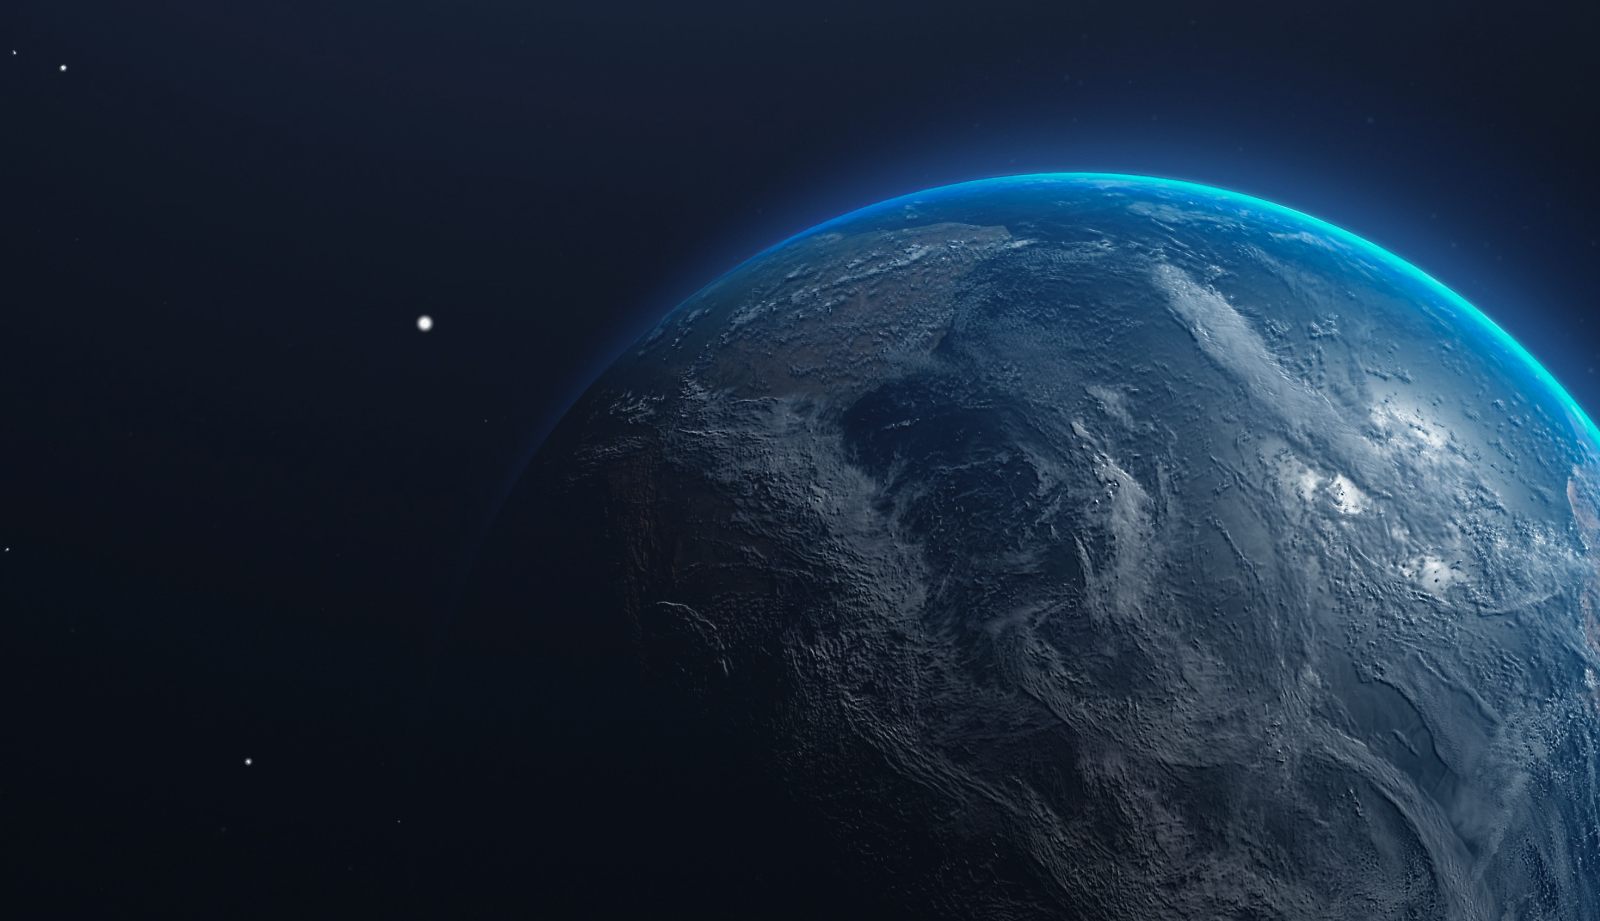 Vista approssimativa della Terra dallo spazio, con superficie e atmosfera in evidenza rispetto all'oscurità dello spazio